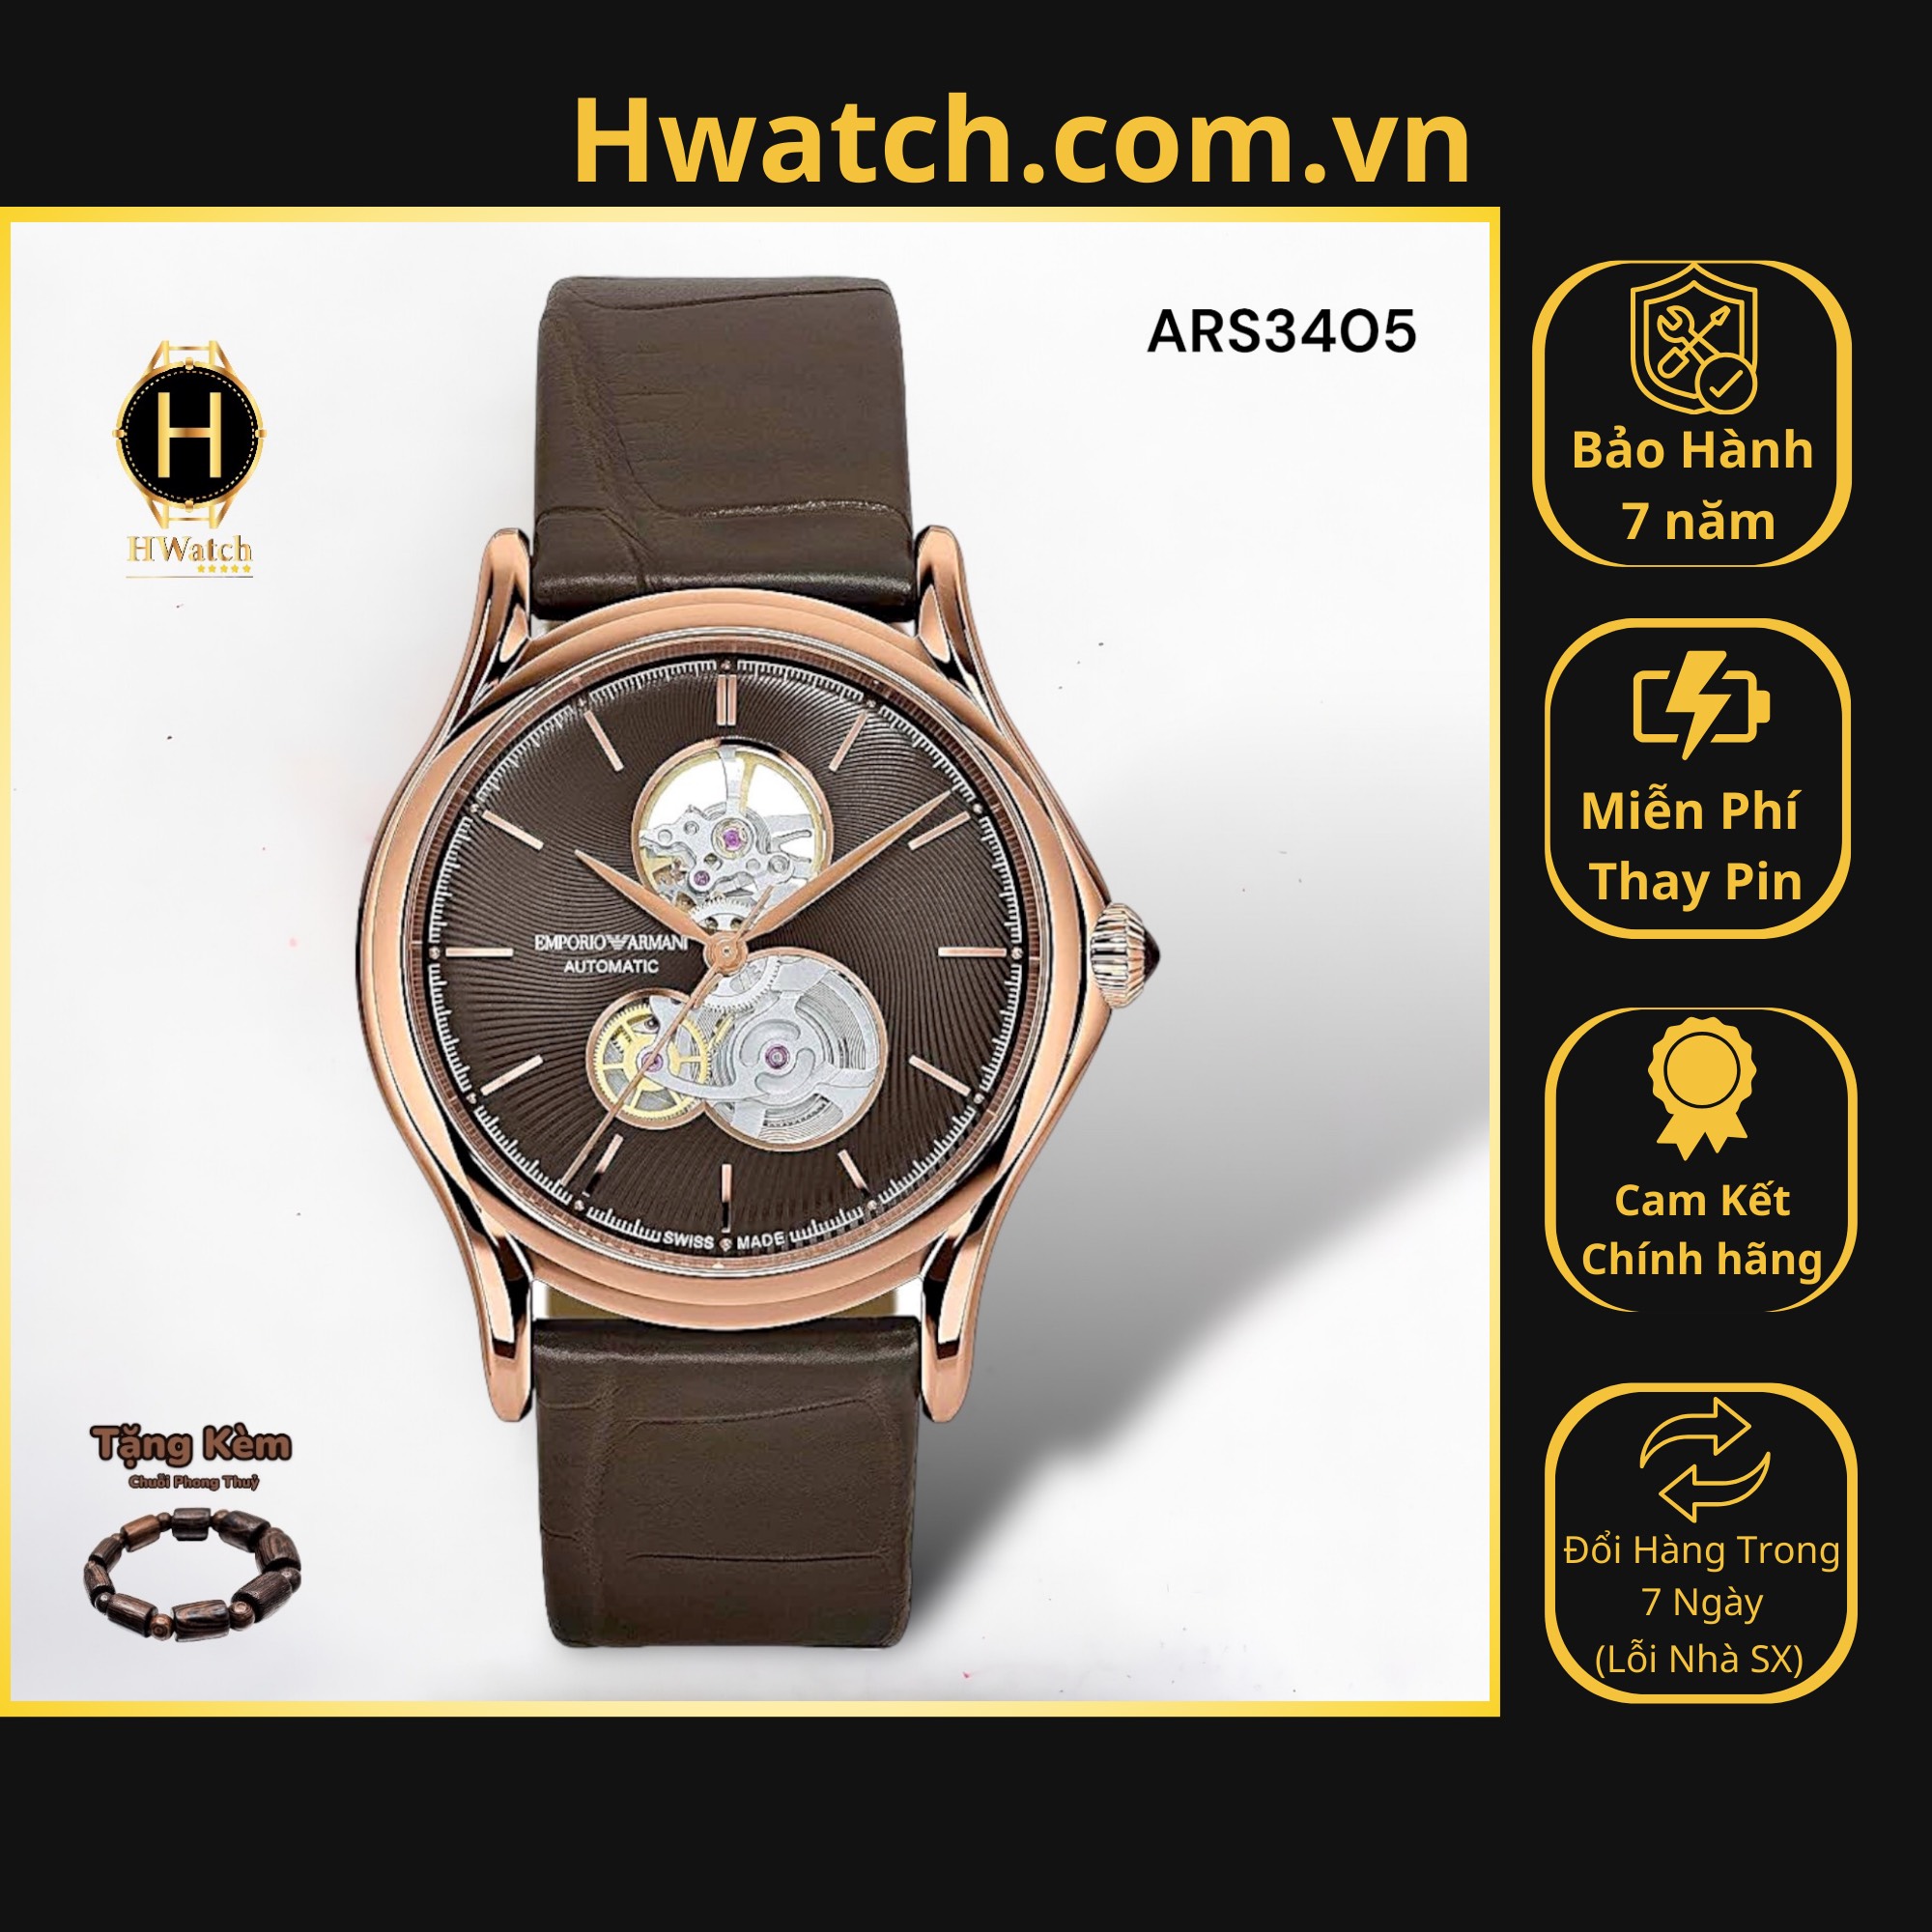 [Có sẵn] [Chính hãng] Đồng Hồ Nam Emporio Armani Automatic ARS3405 Dây Da Mặt Nâu Rose Gold-Tone Hwatch.com.vn